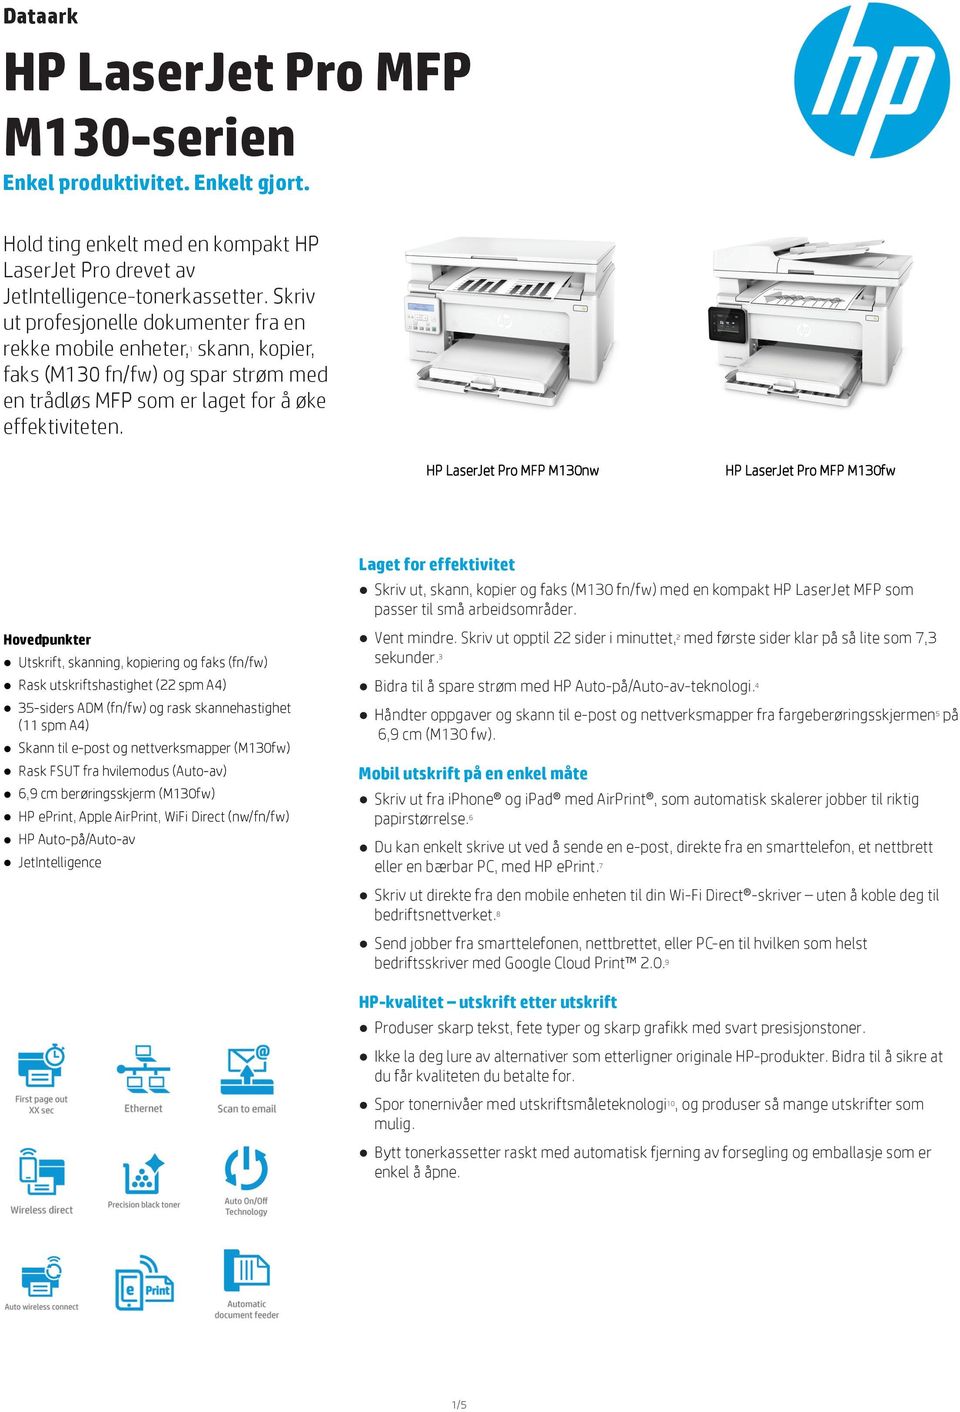 1 HP LaserJet Pro MFP M130nw HP LaserJet Pro MFP M130fw Laget for effektivitet Skriv ut, skann, kopier og faks (M130 fn/fw) med en kompakt HP LaserJet MFP som passer til små arbeidsområder.